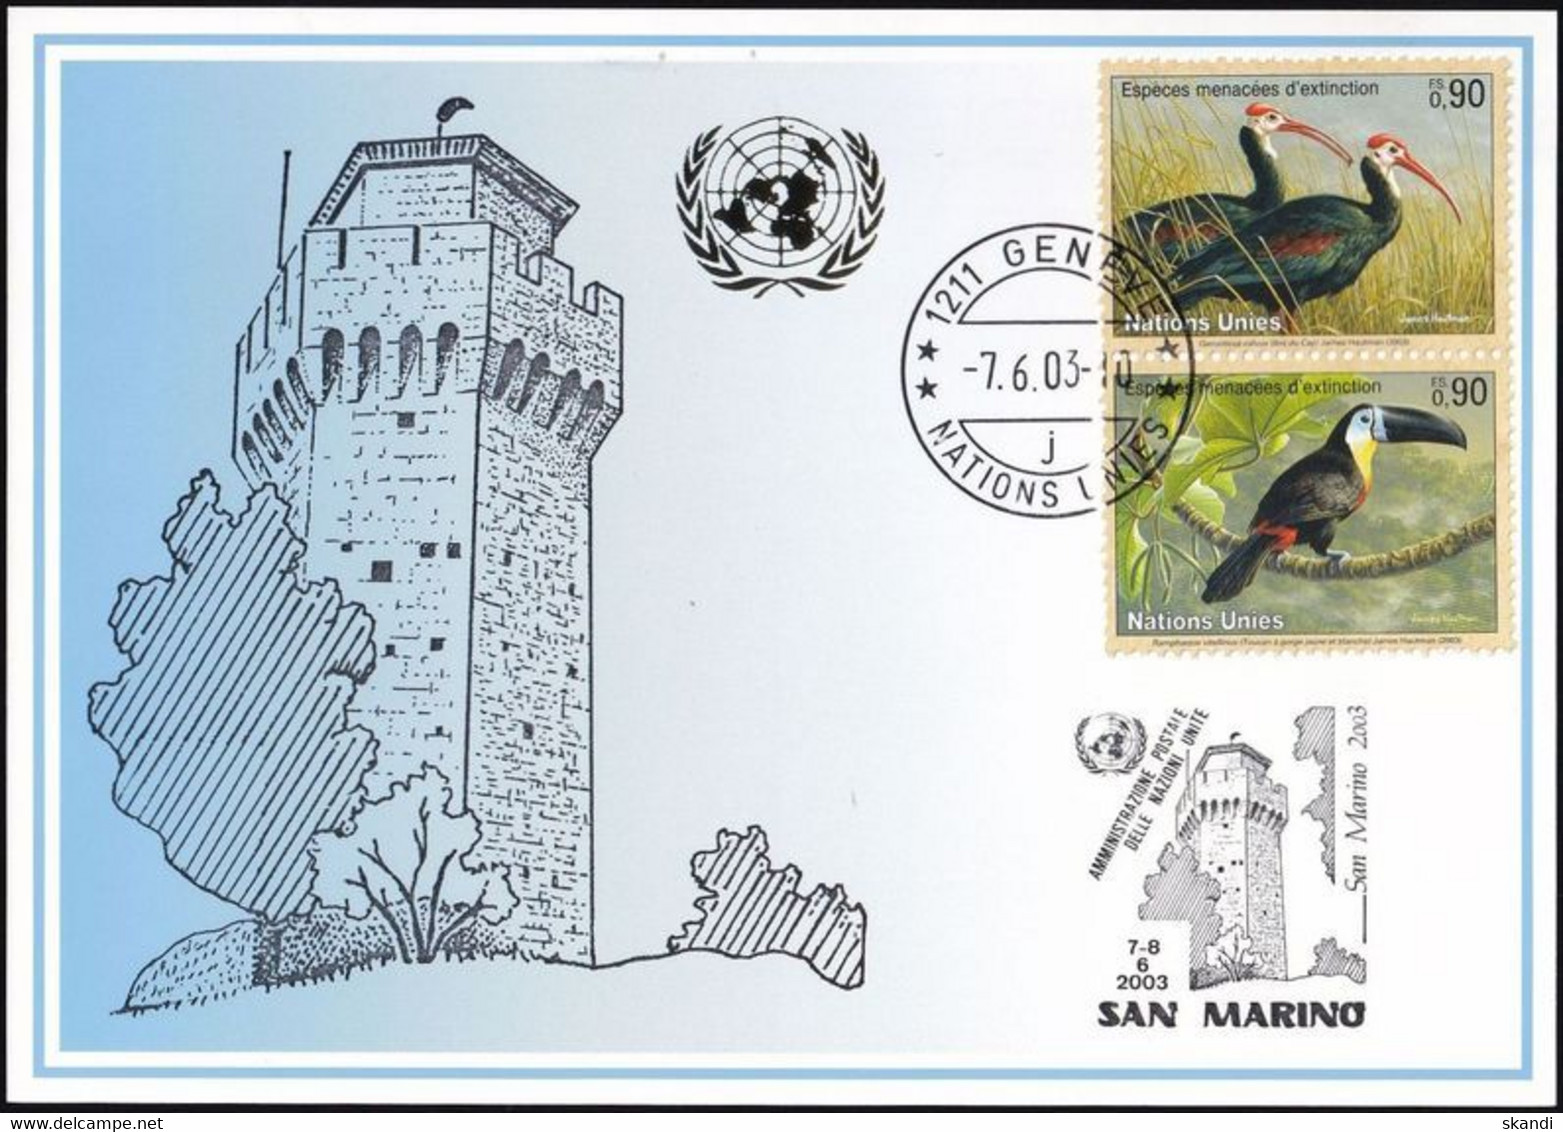 UNO GENF 2003 Mi-Nr. 341 Blaue Karte - Blue Card  Mit Erinnerungsstempel SAN MARINO - Covers & Documents